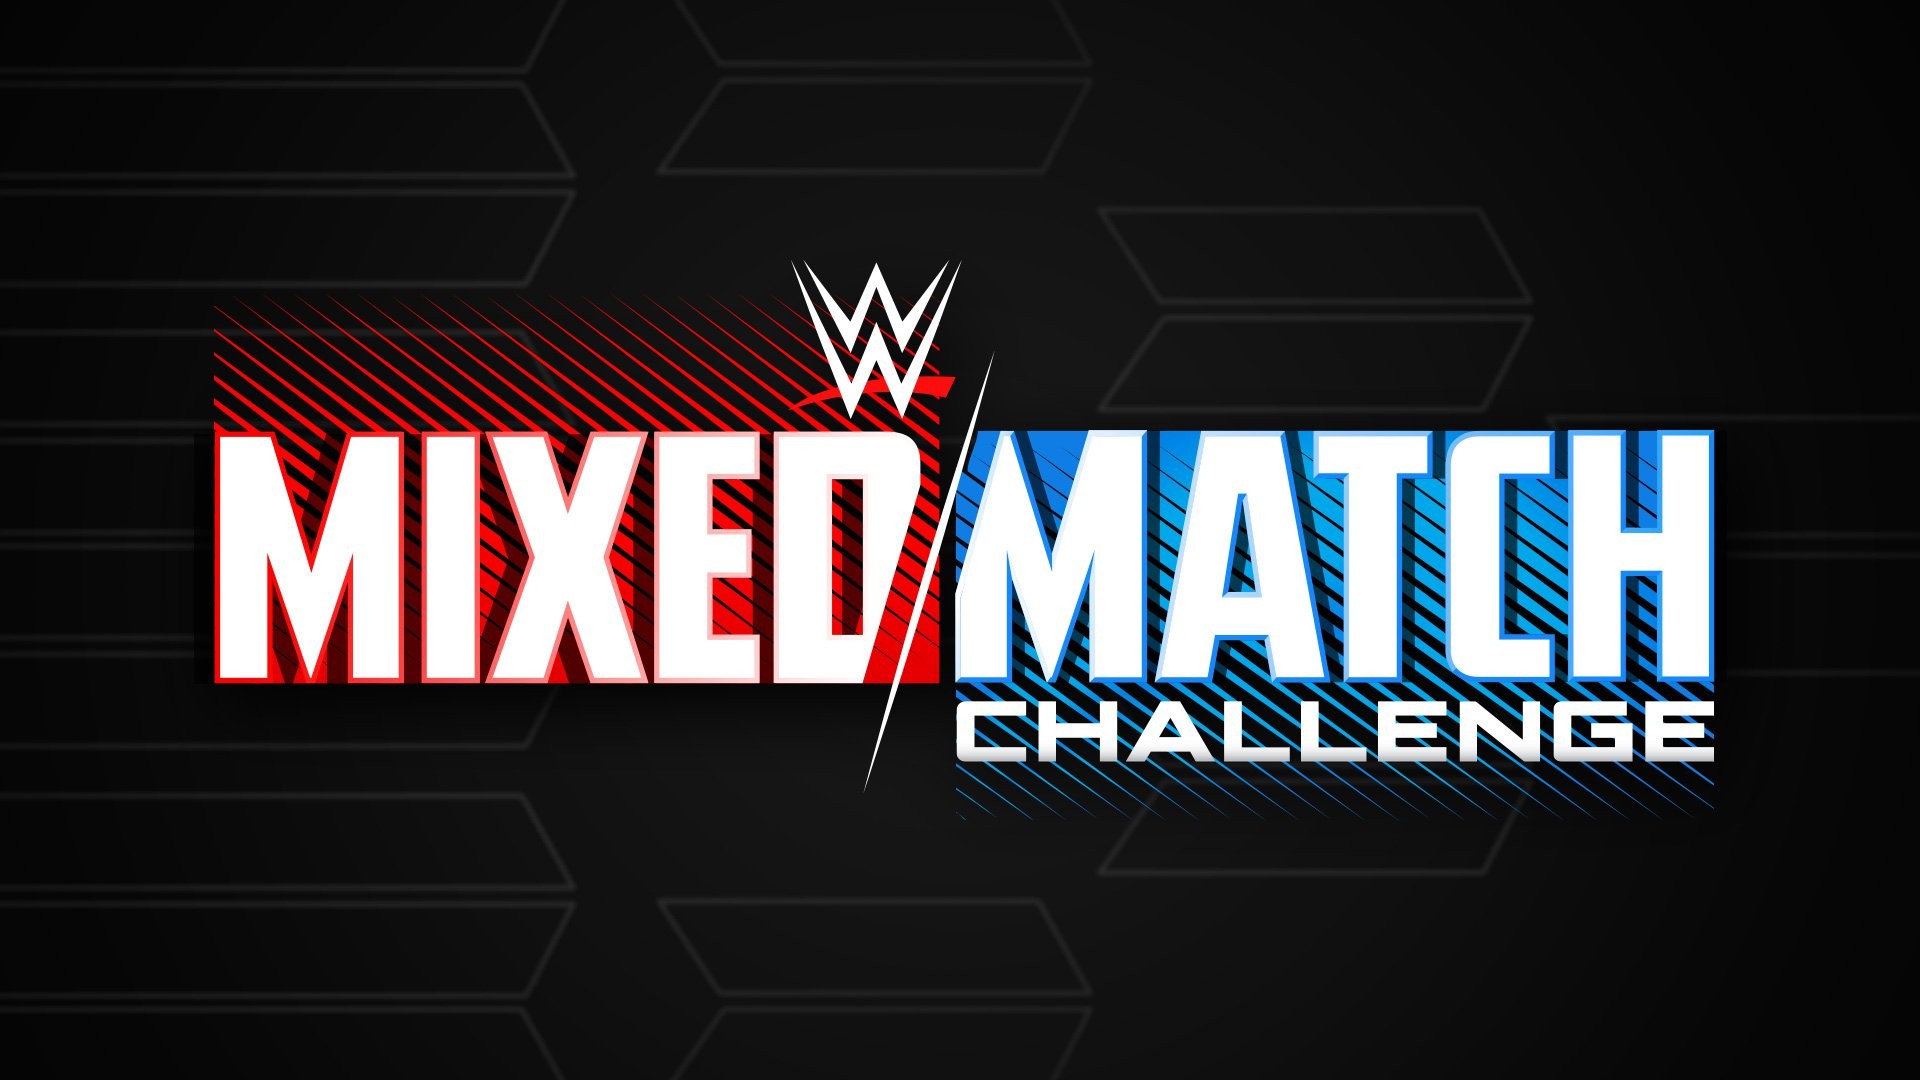 WWE Mixed Match Challenge